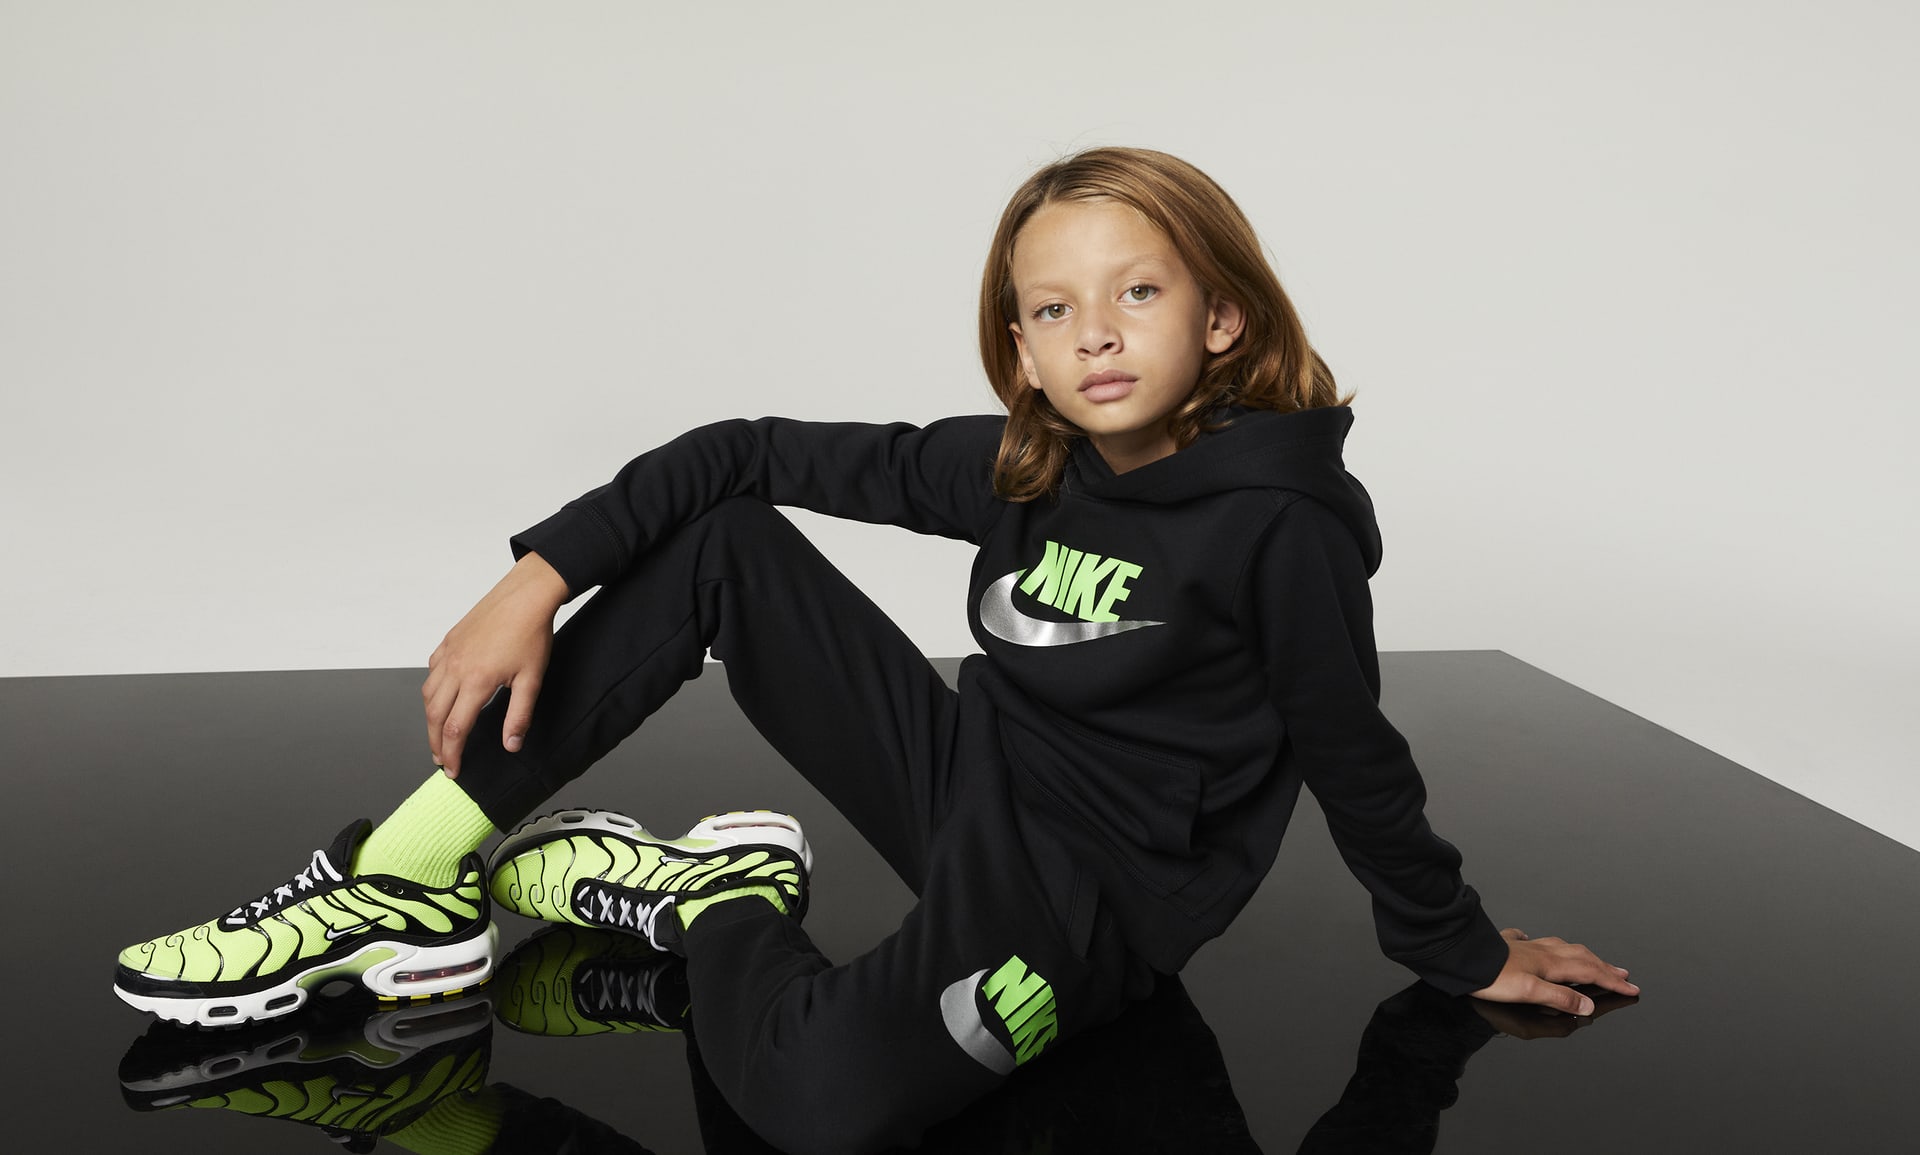 Nike Boys Sportswear Club Fleece Pants